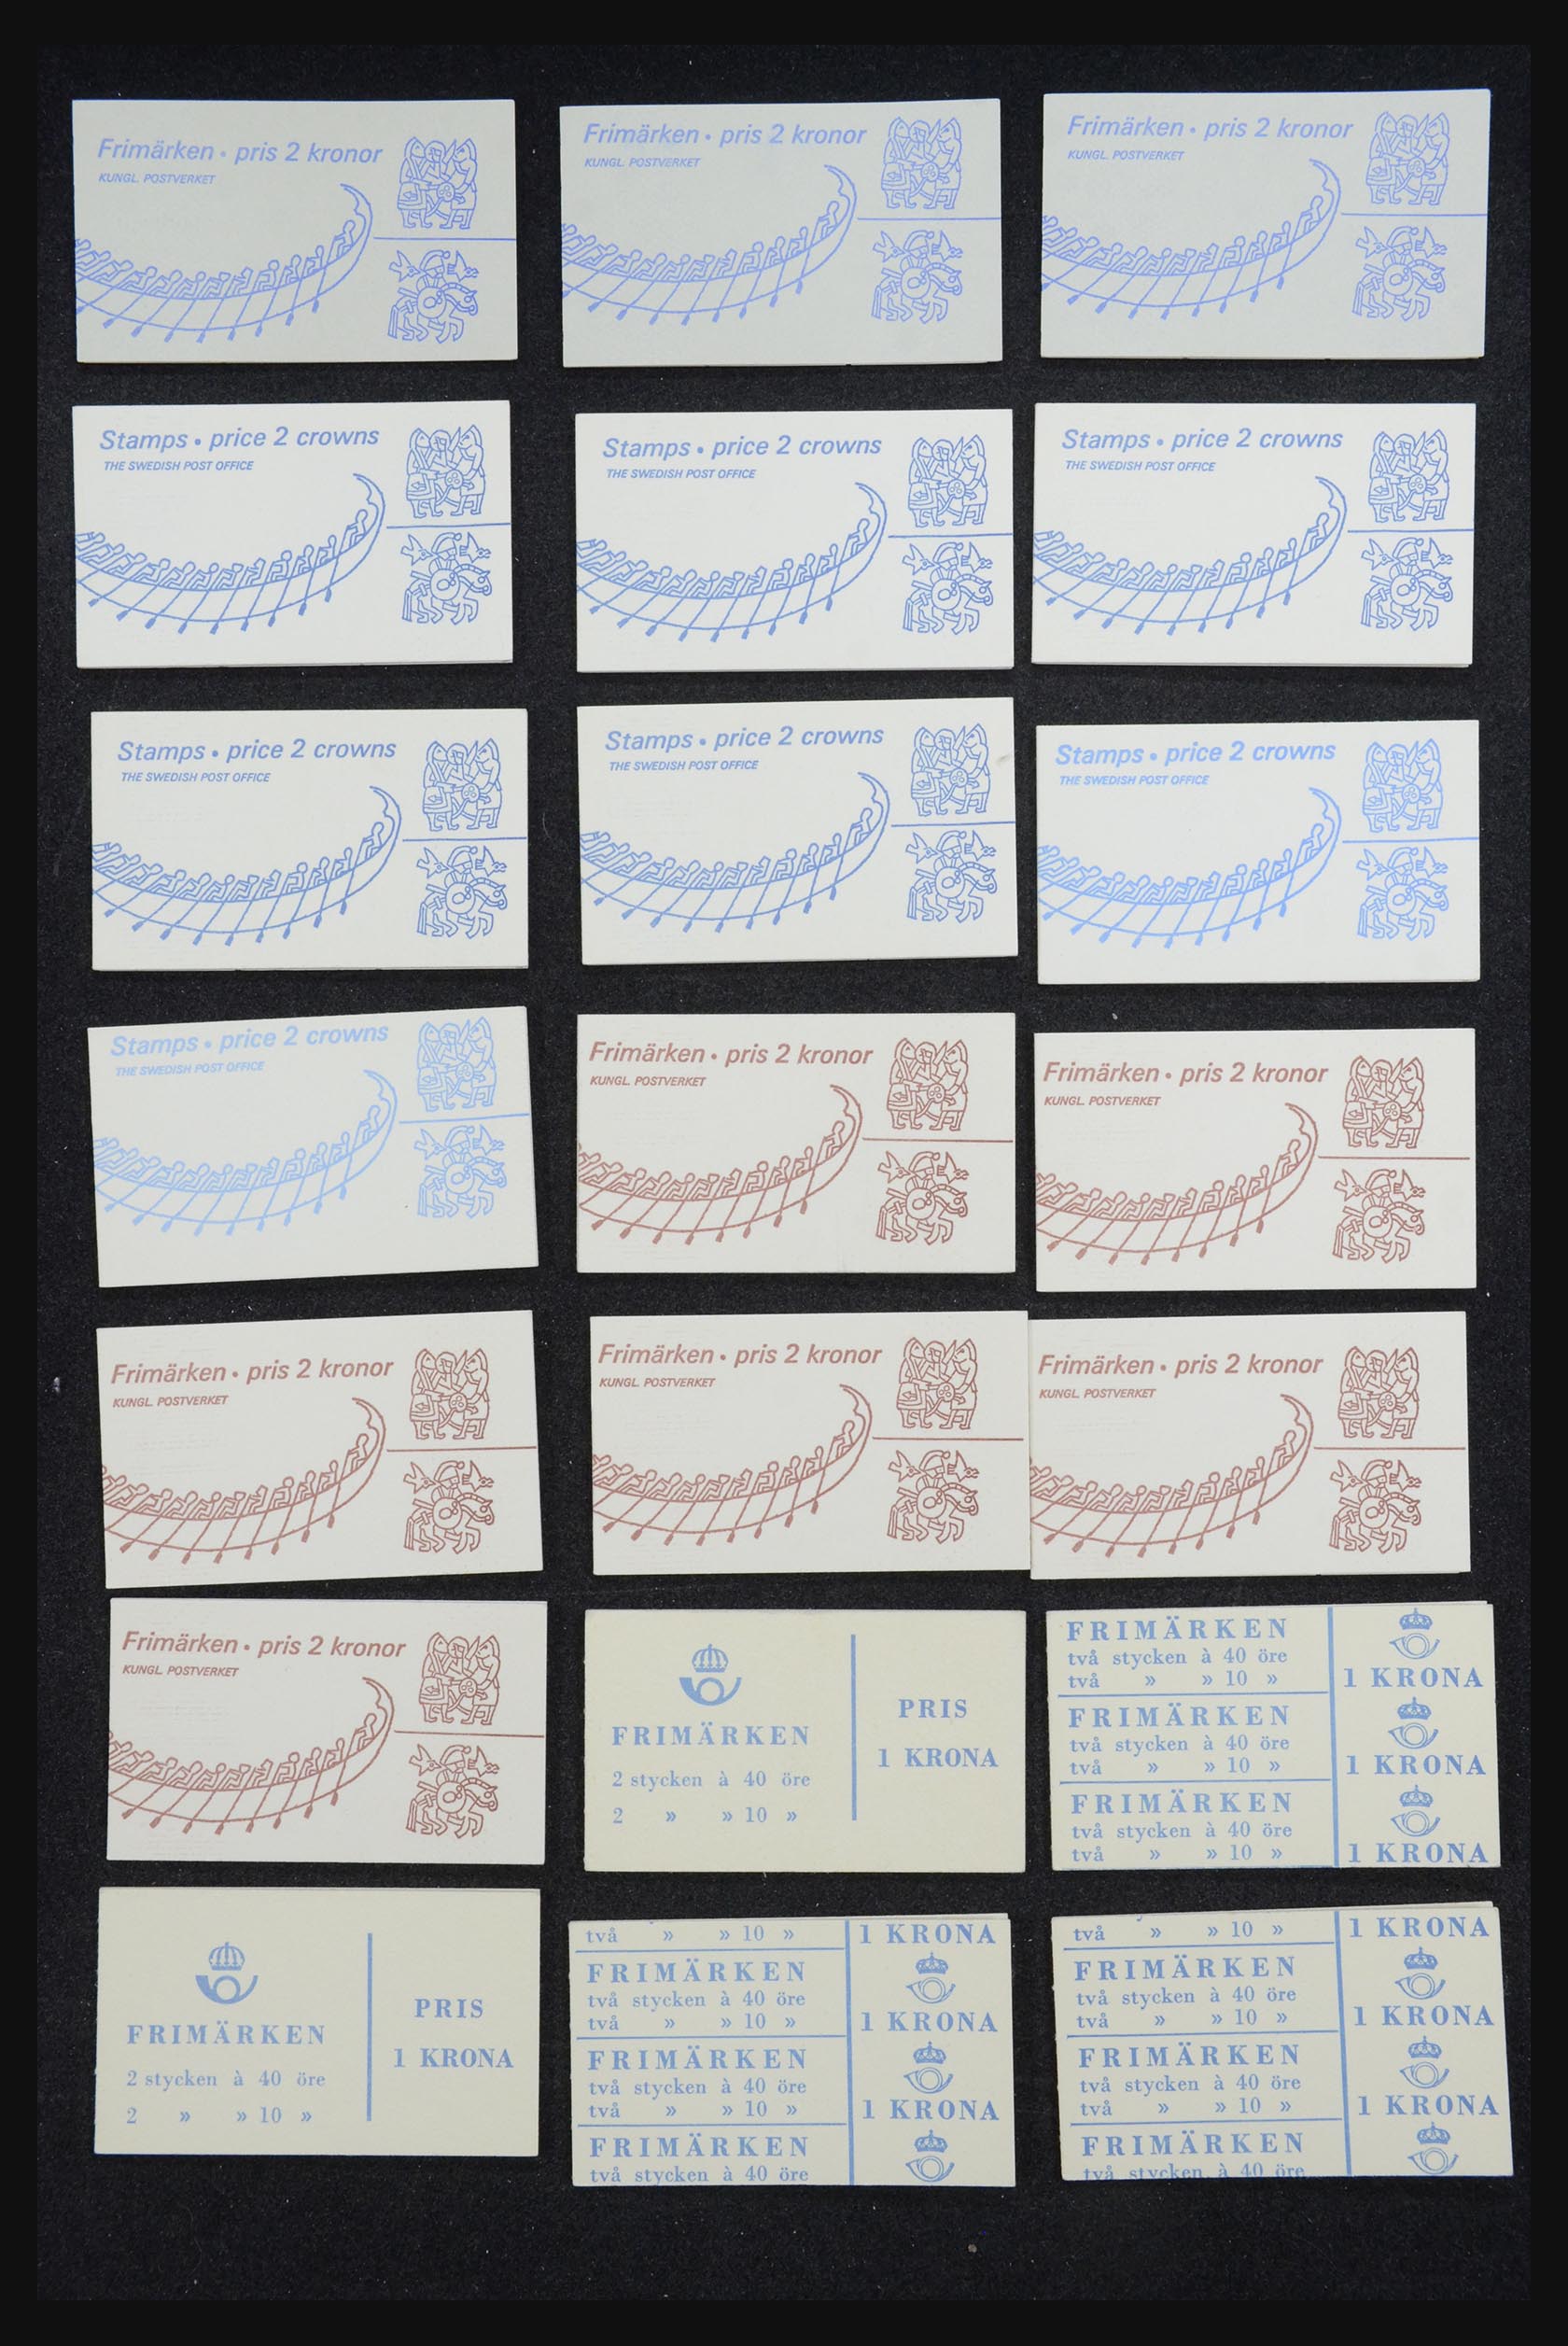 32026 011 - 32026 Sweden stampbooklets 1949-1990.